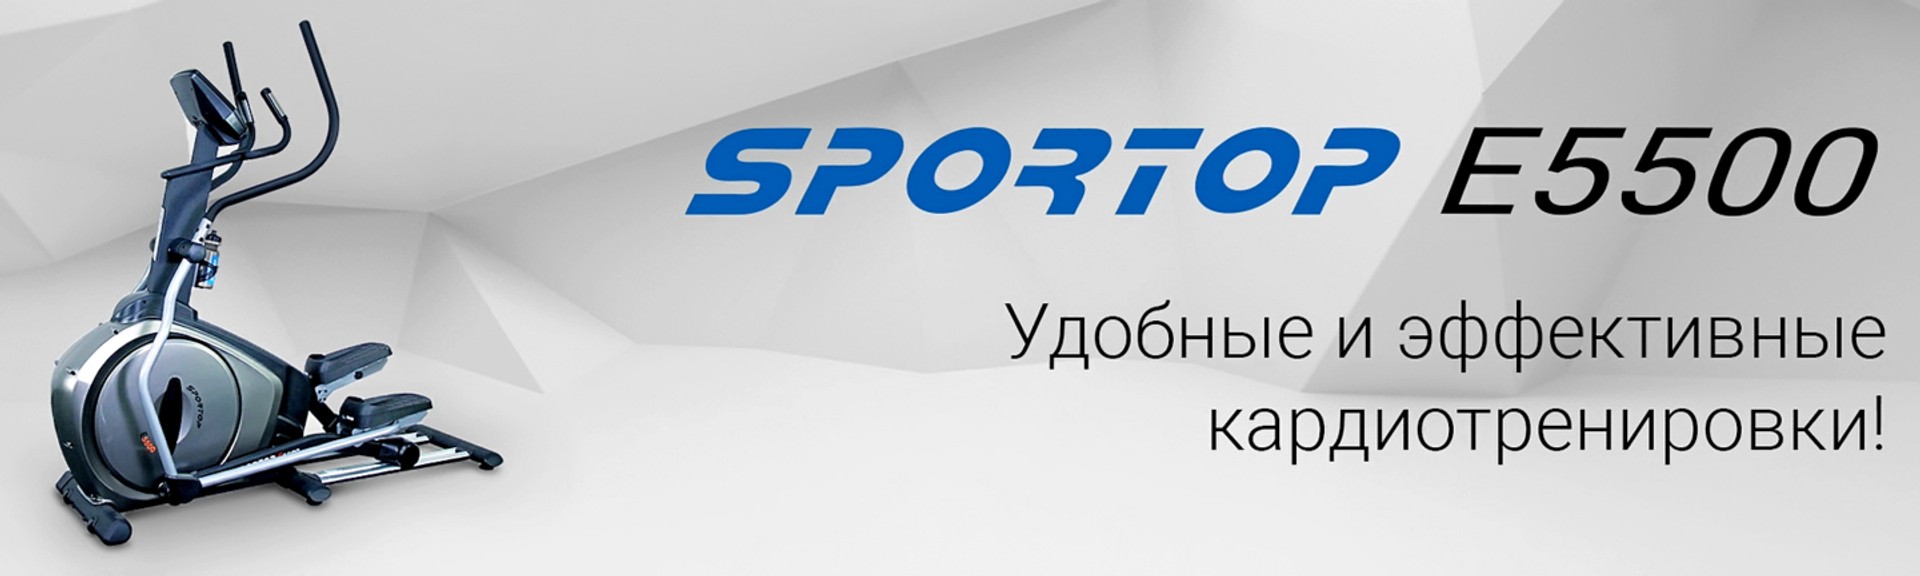 Орбитрек Sportop E5500